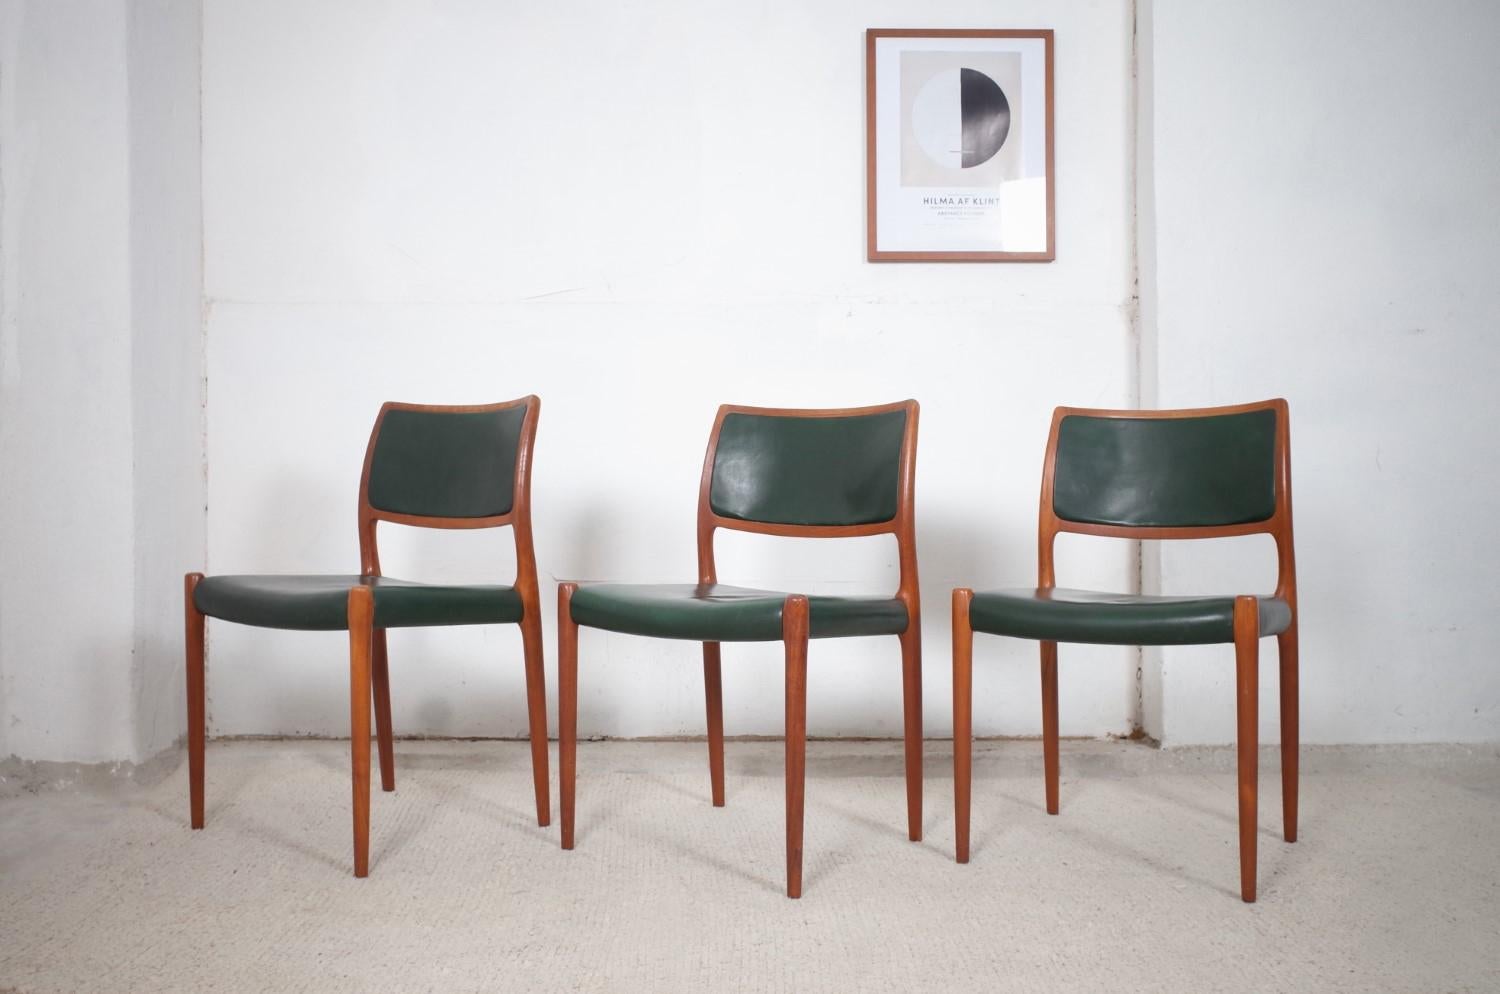 Zum Verkauf stehen drei klassisch schöne Teakholz Modell 80 Stühle von Niels Otto Moller für JL Møllers. Sie sind mit dunkelgrünem Leder bezogen, das sich perfekt in die Stuhlform einfügt. Die Stühle befinden sich in einem guten Originalzustand,